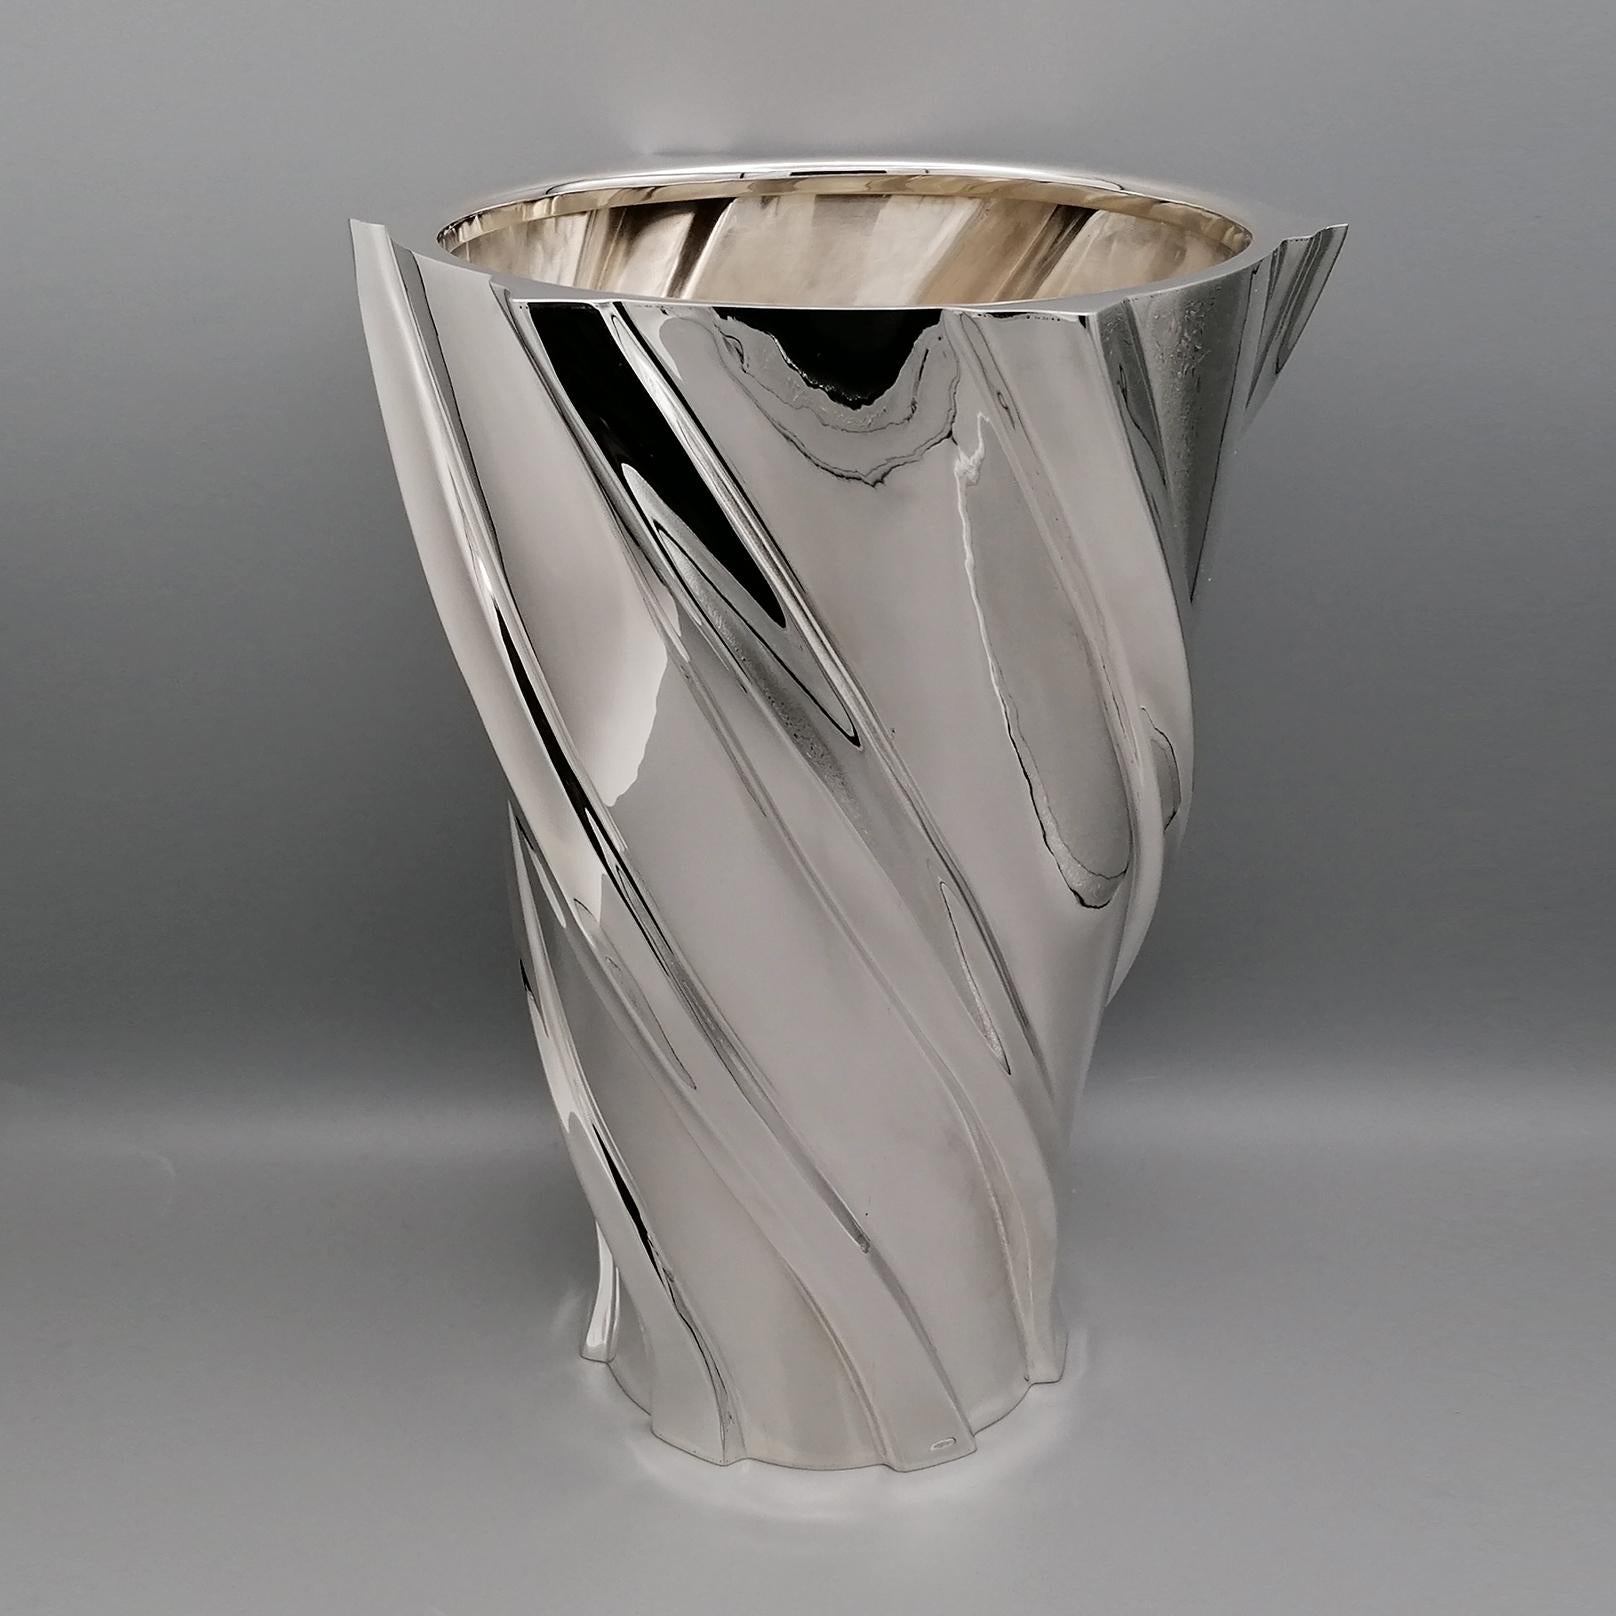 Vase aus Sterlingsilber, komplett handgefertigt, ausgehend von einem Silberblech.
Die Form des Körpers ist konisch.
Die Basis, geformt, ist cm. 12,5 (4,92 in.) und erstreckt sich in der Größe auf die Oberseite der 